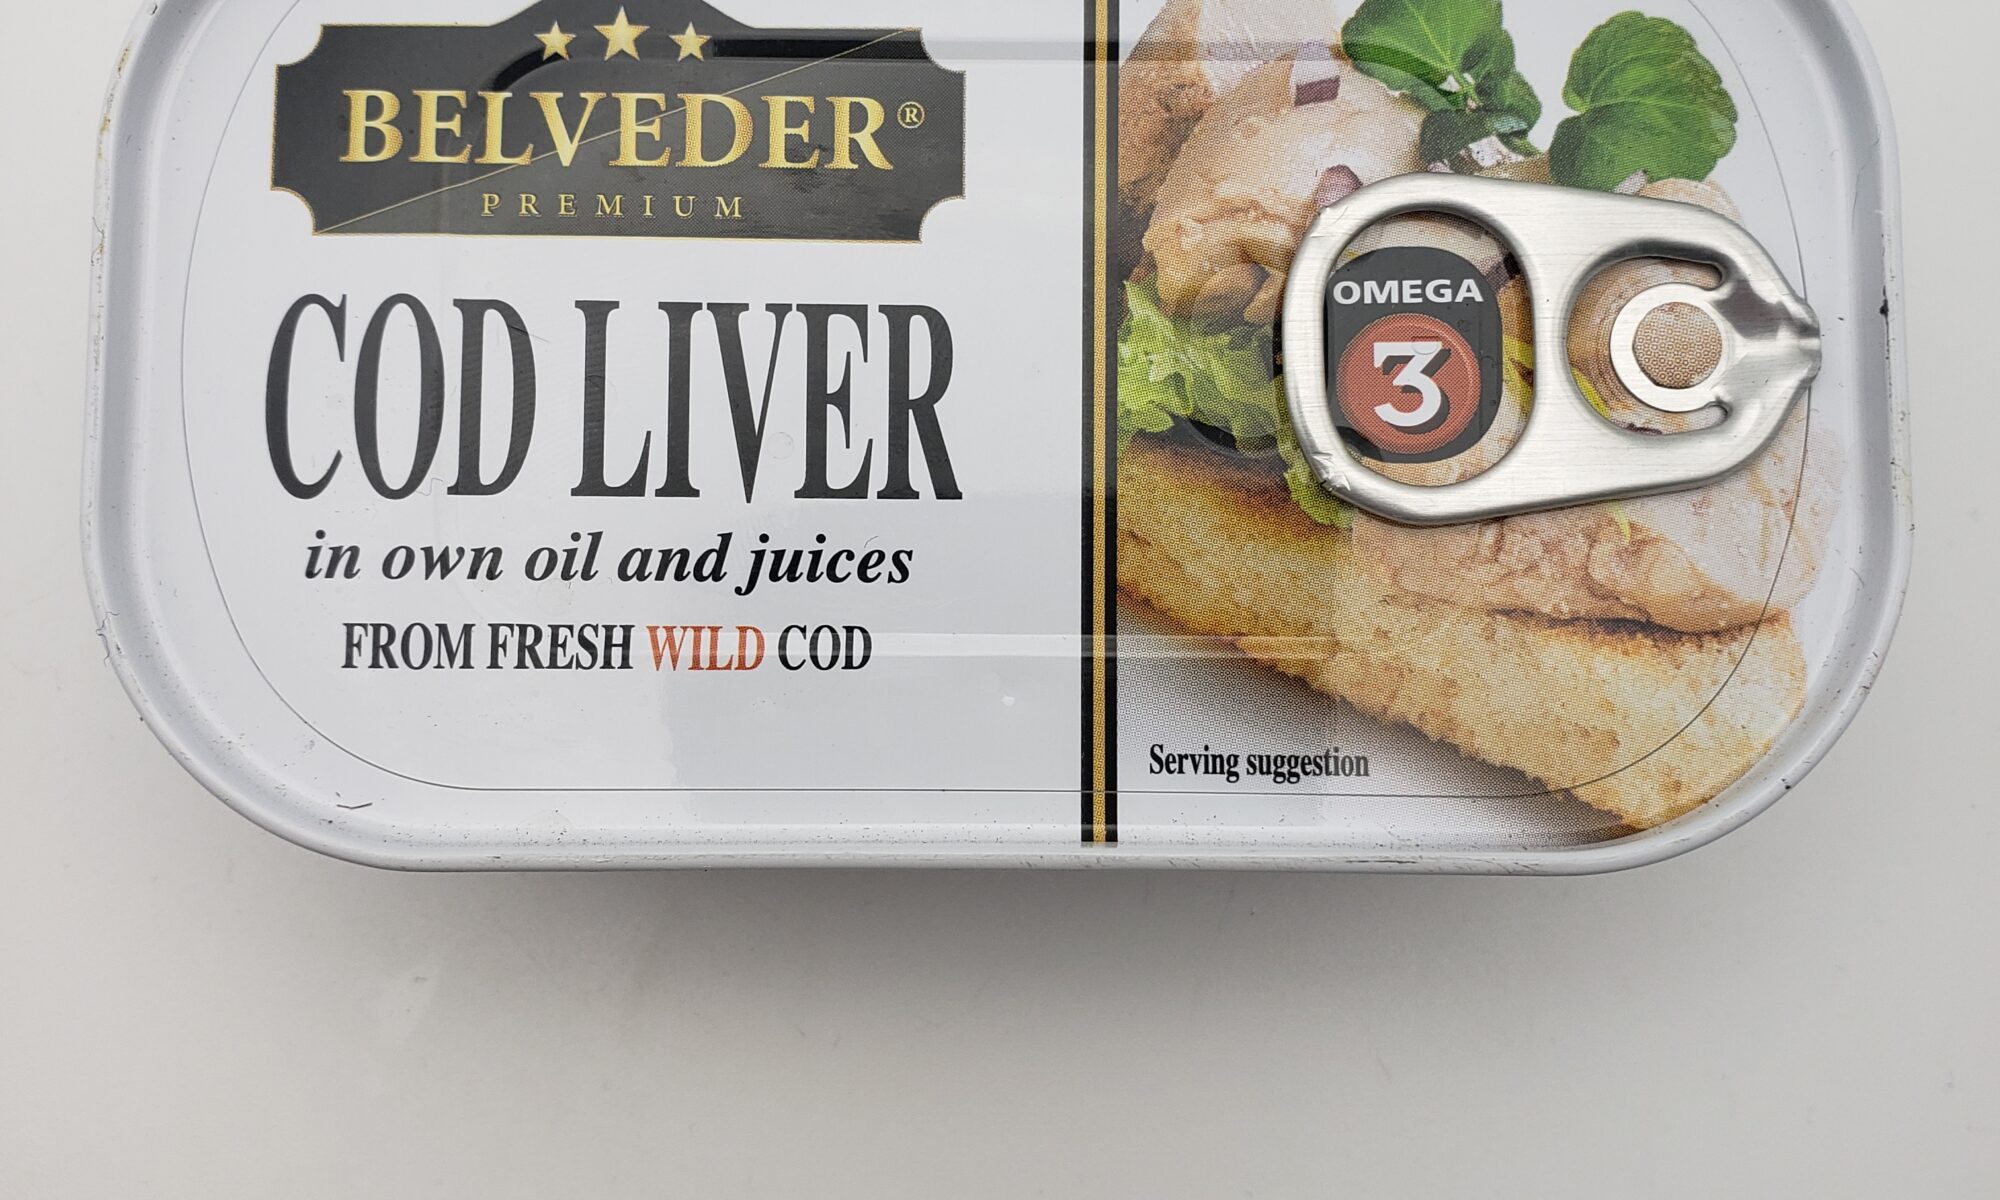 Image of Belveder cod liver